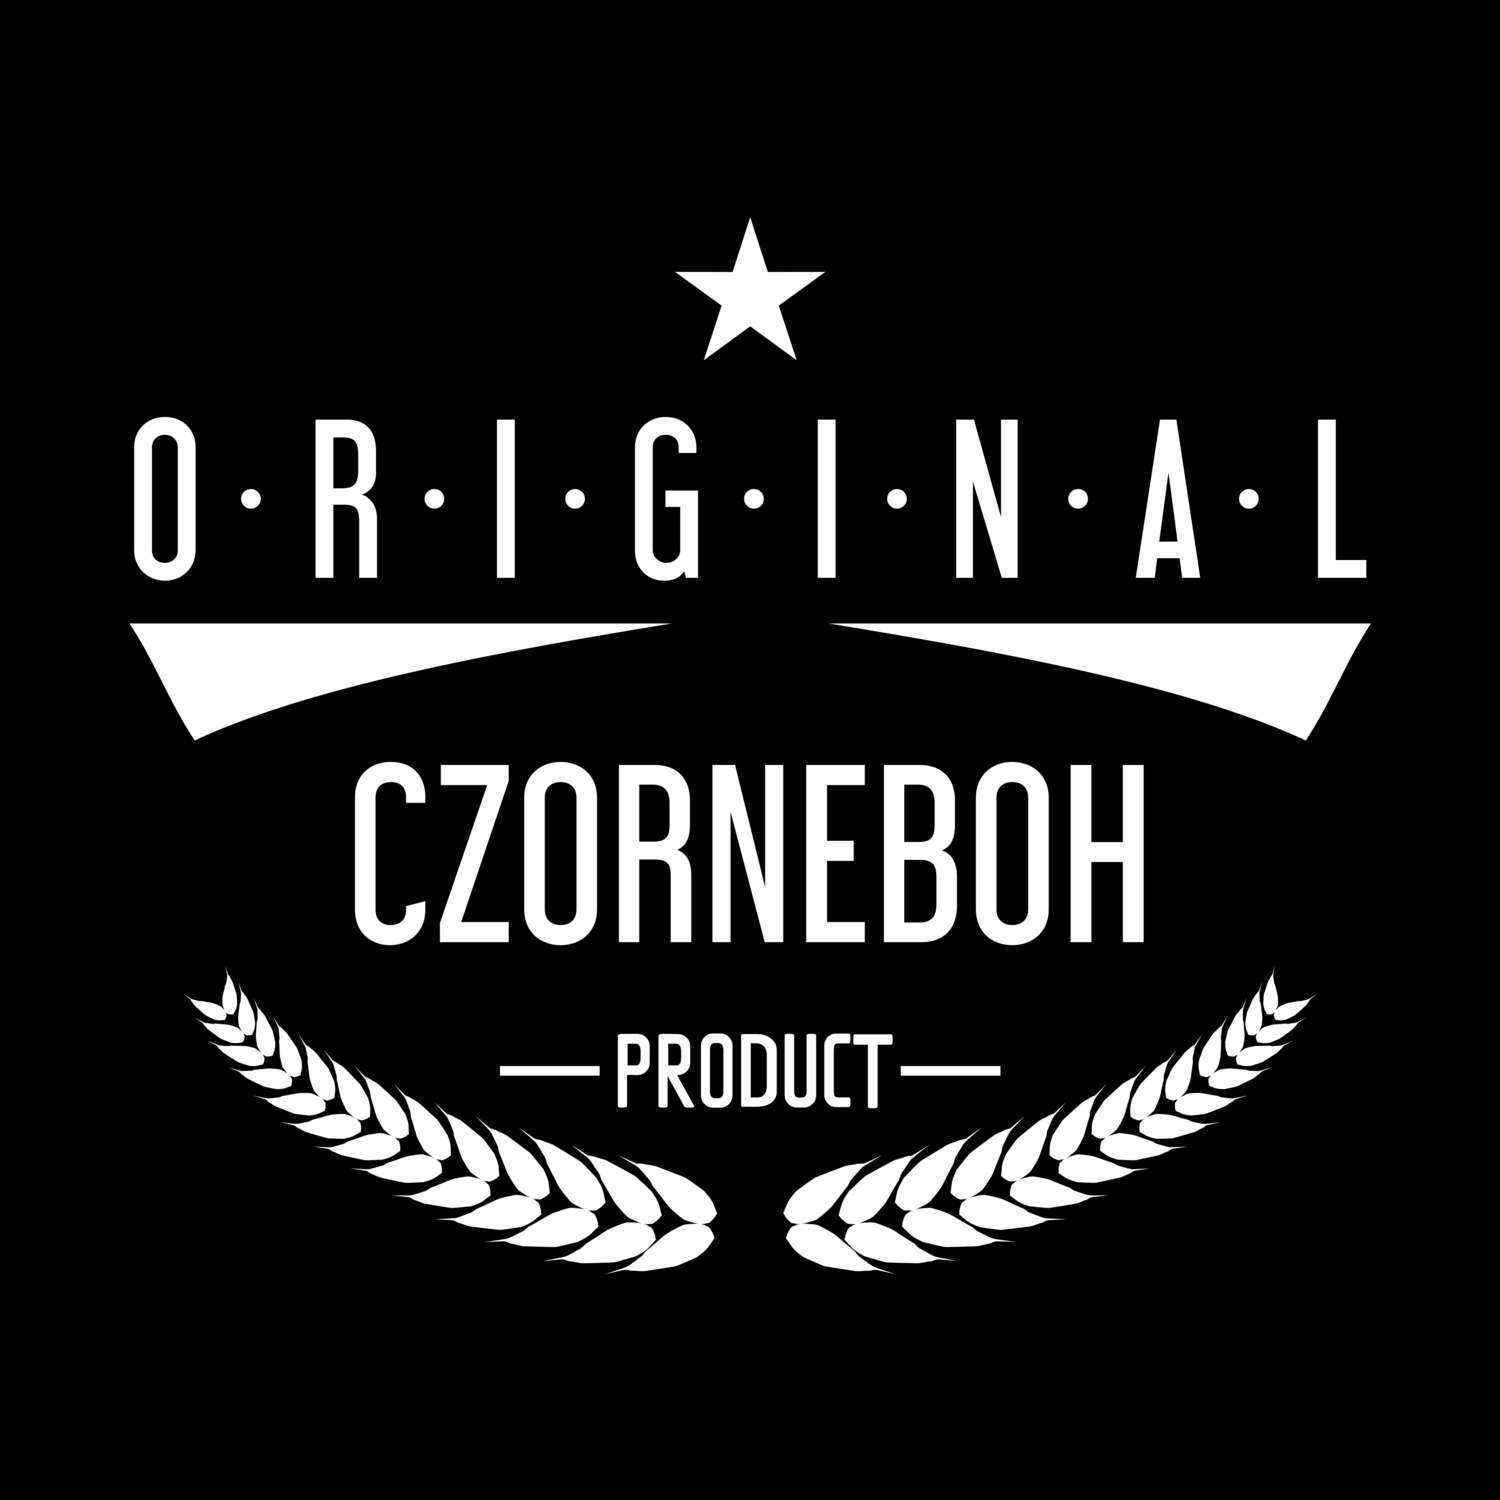 Czorneboh T-Shirt »Original Product«